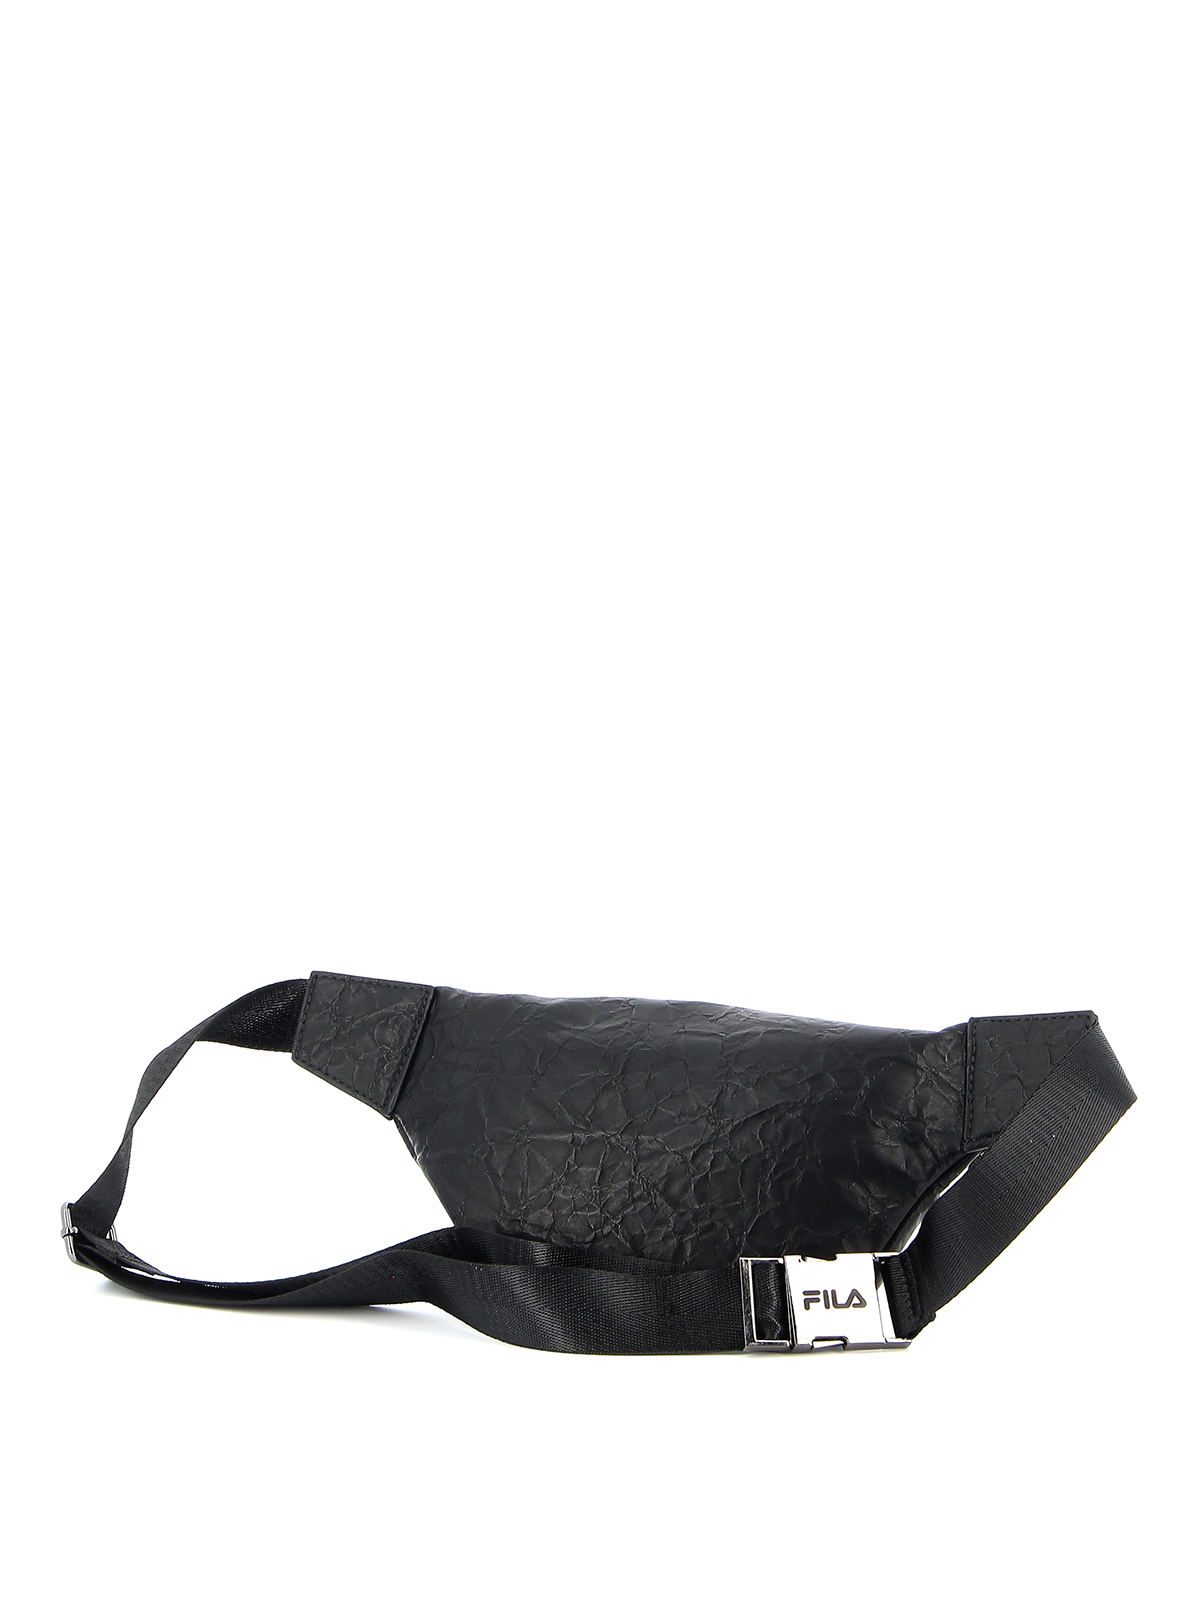 bags Fila - belt bag - 685200761887002